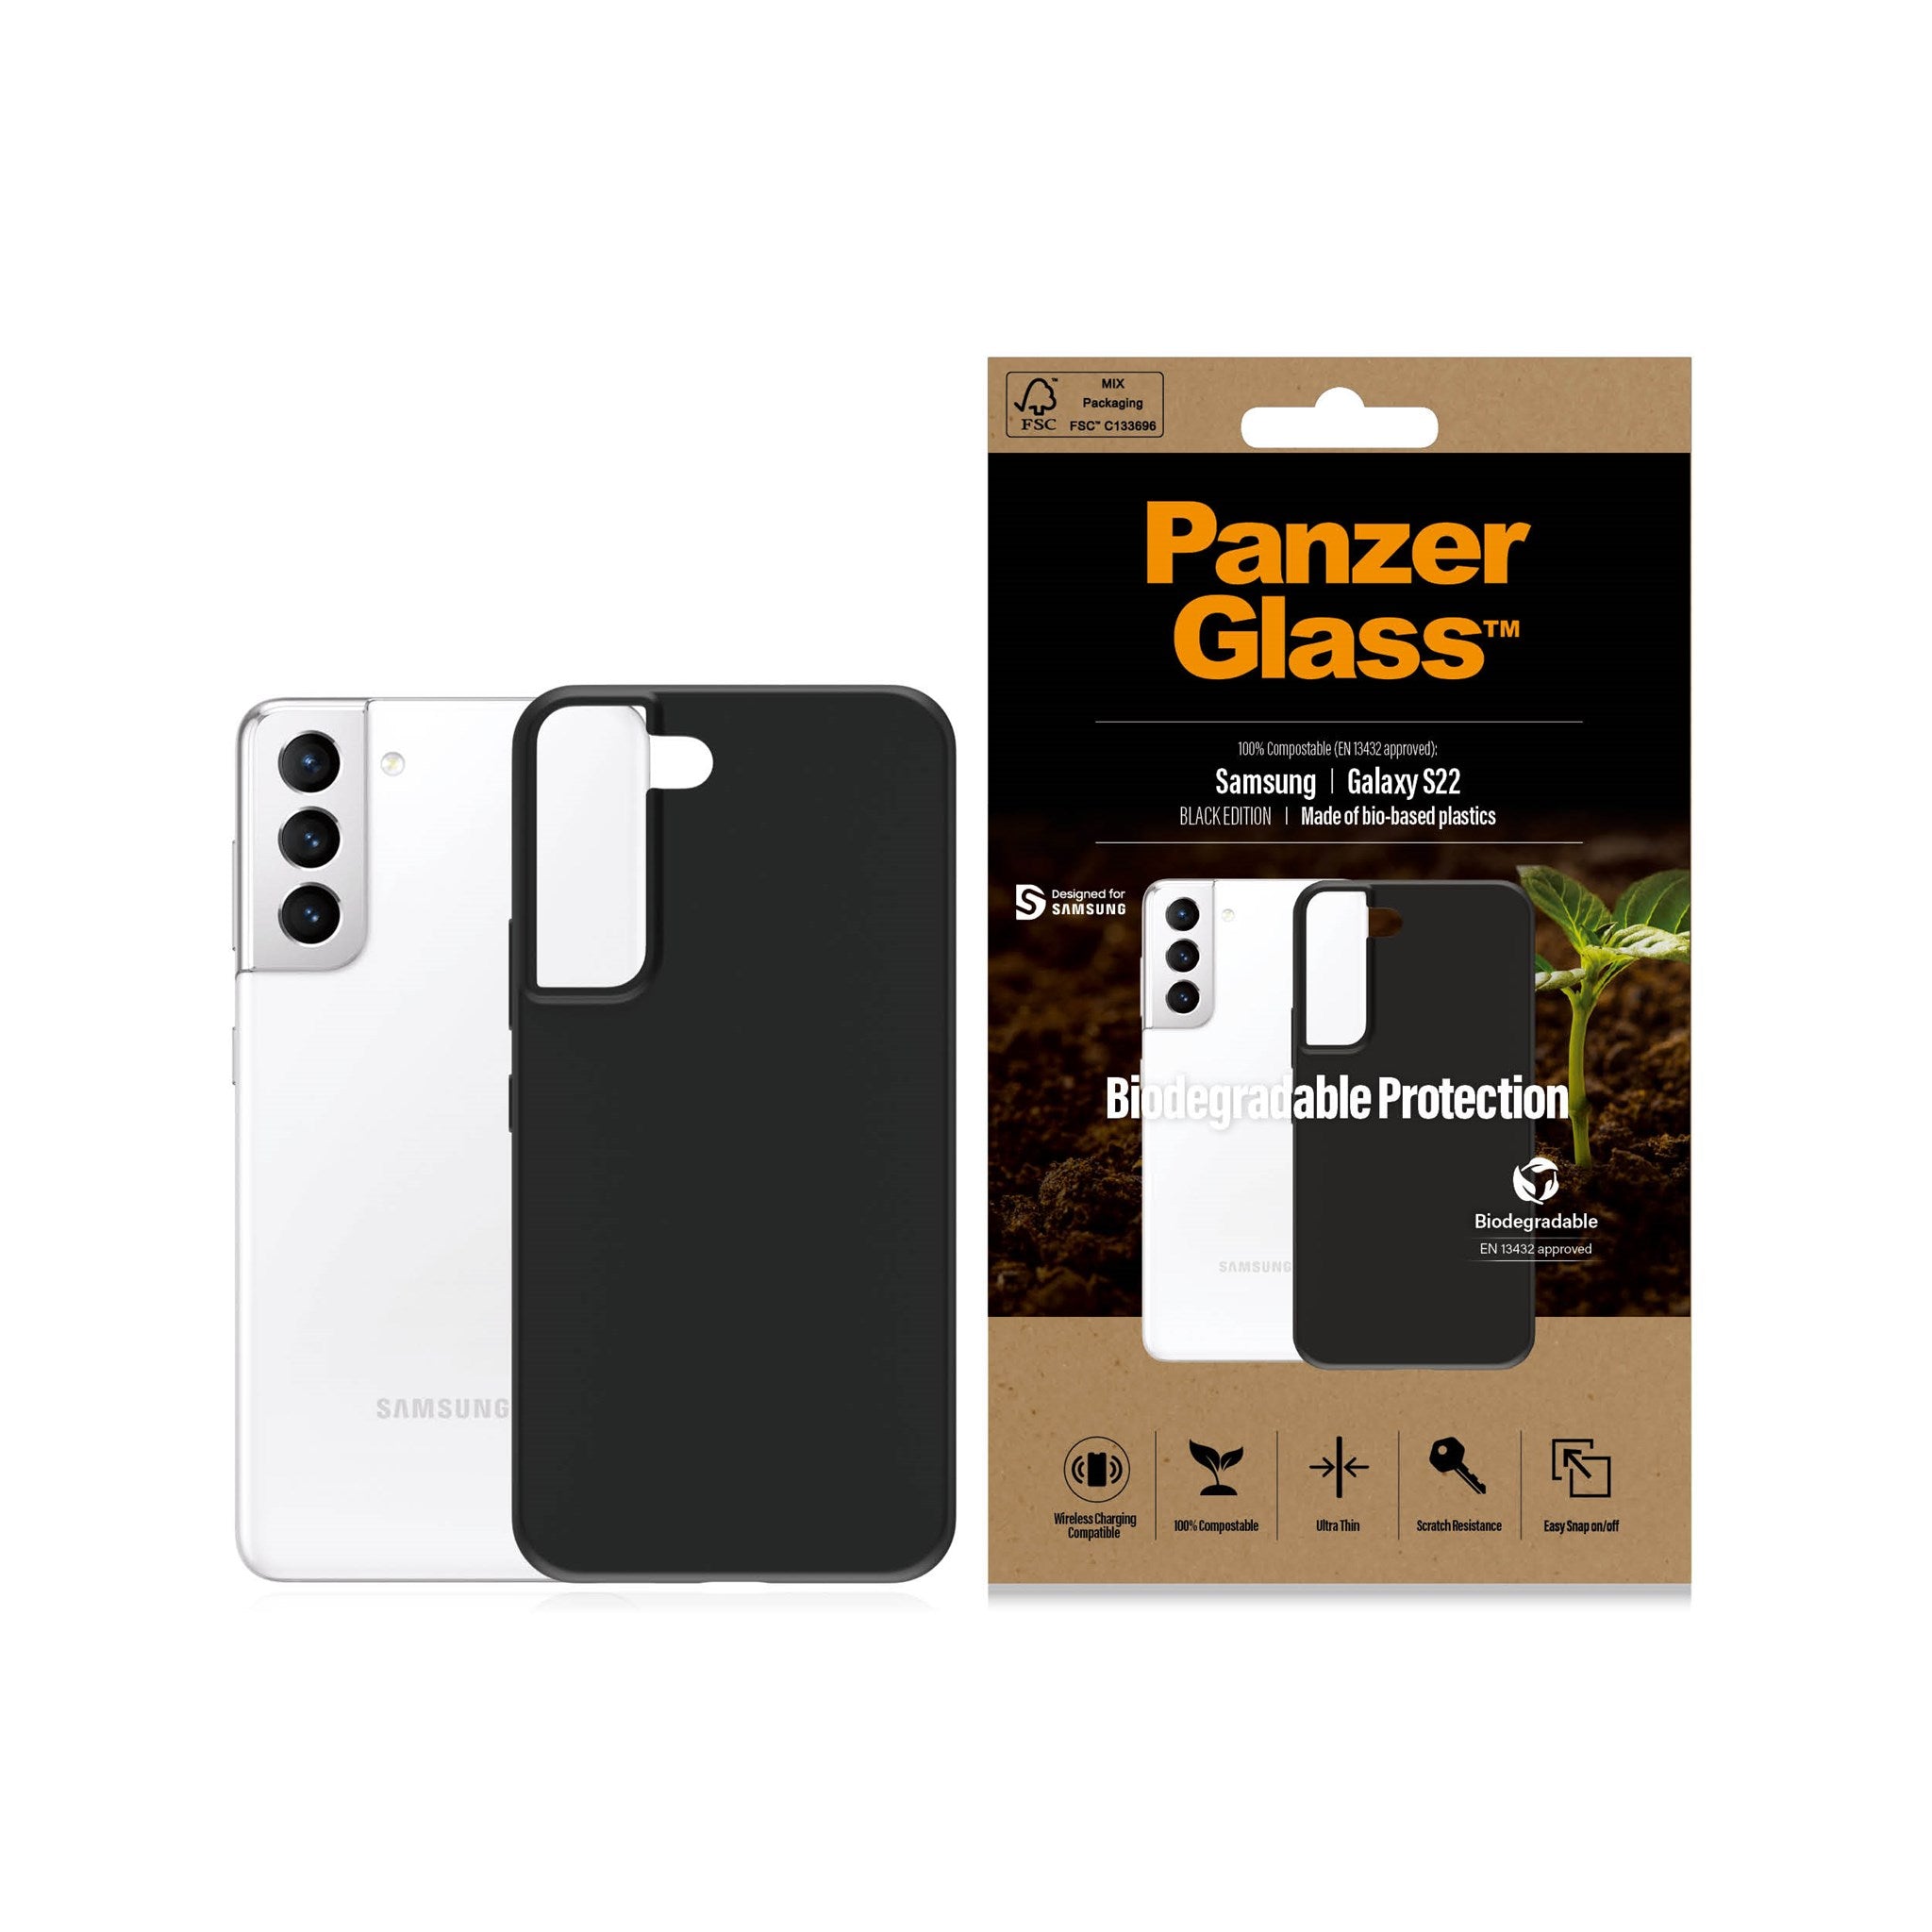 PanzerGlass® Biodegradable Case Samsung Galaxy S22